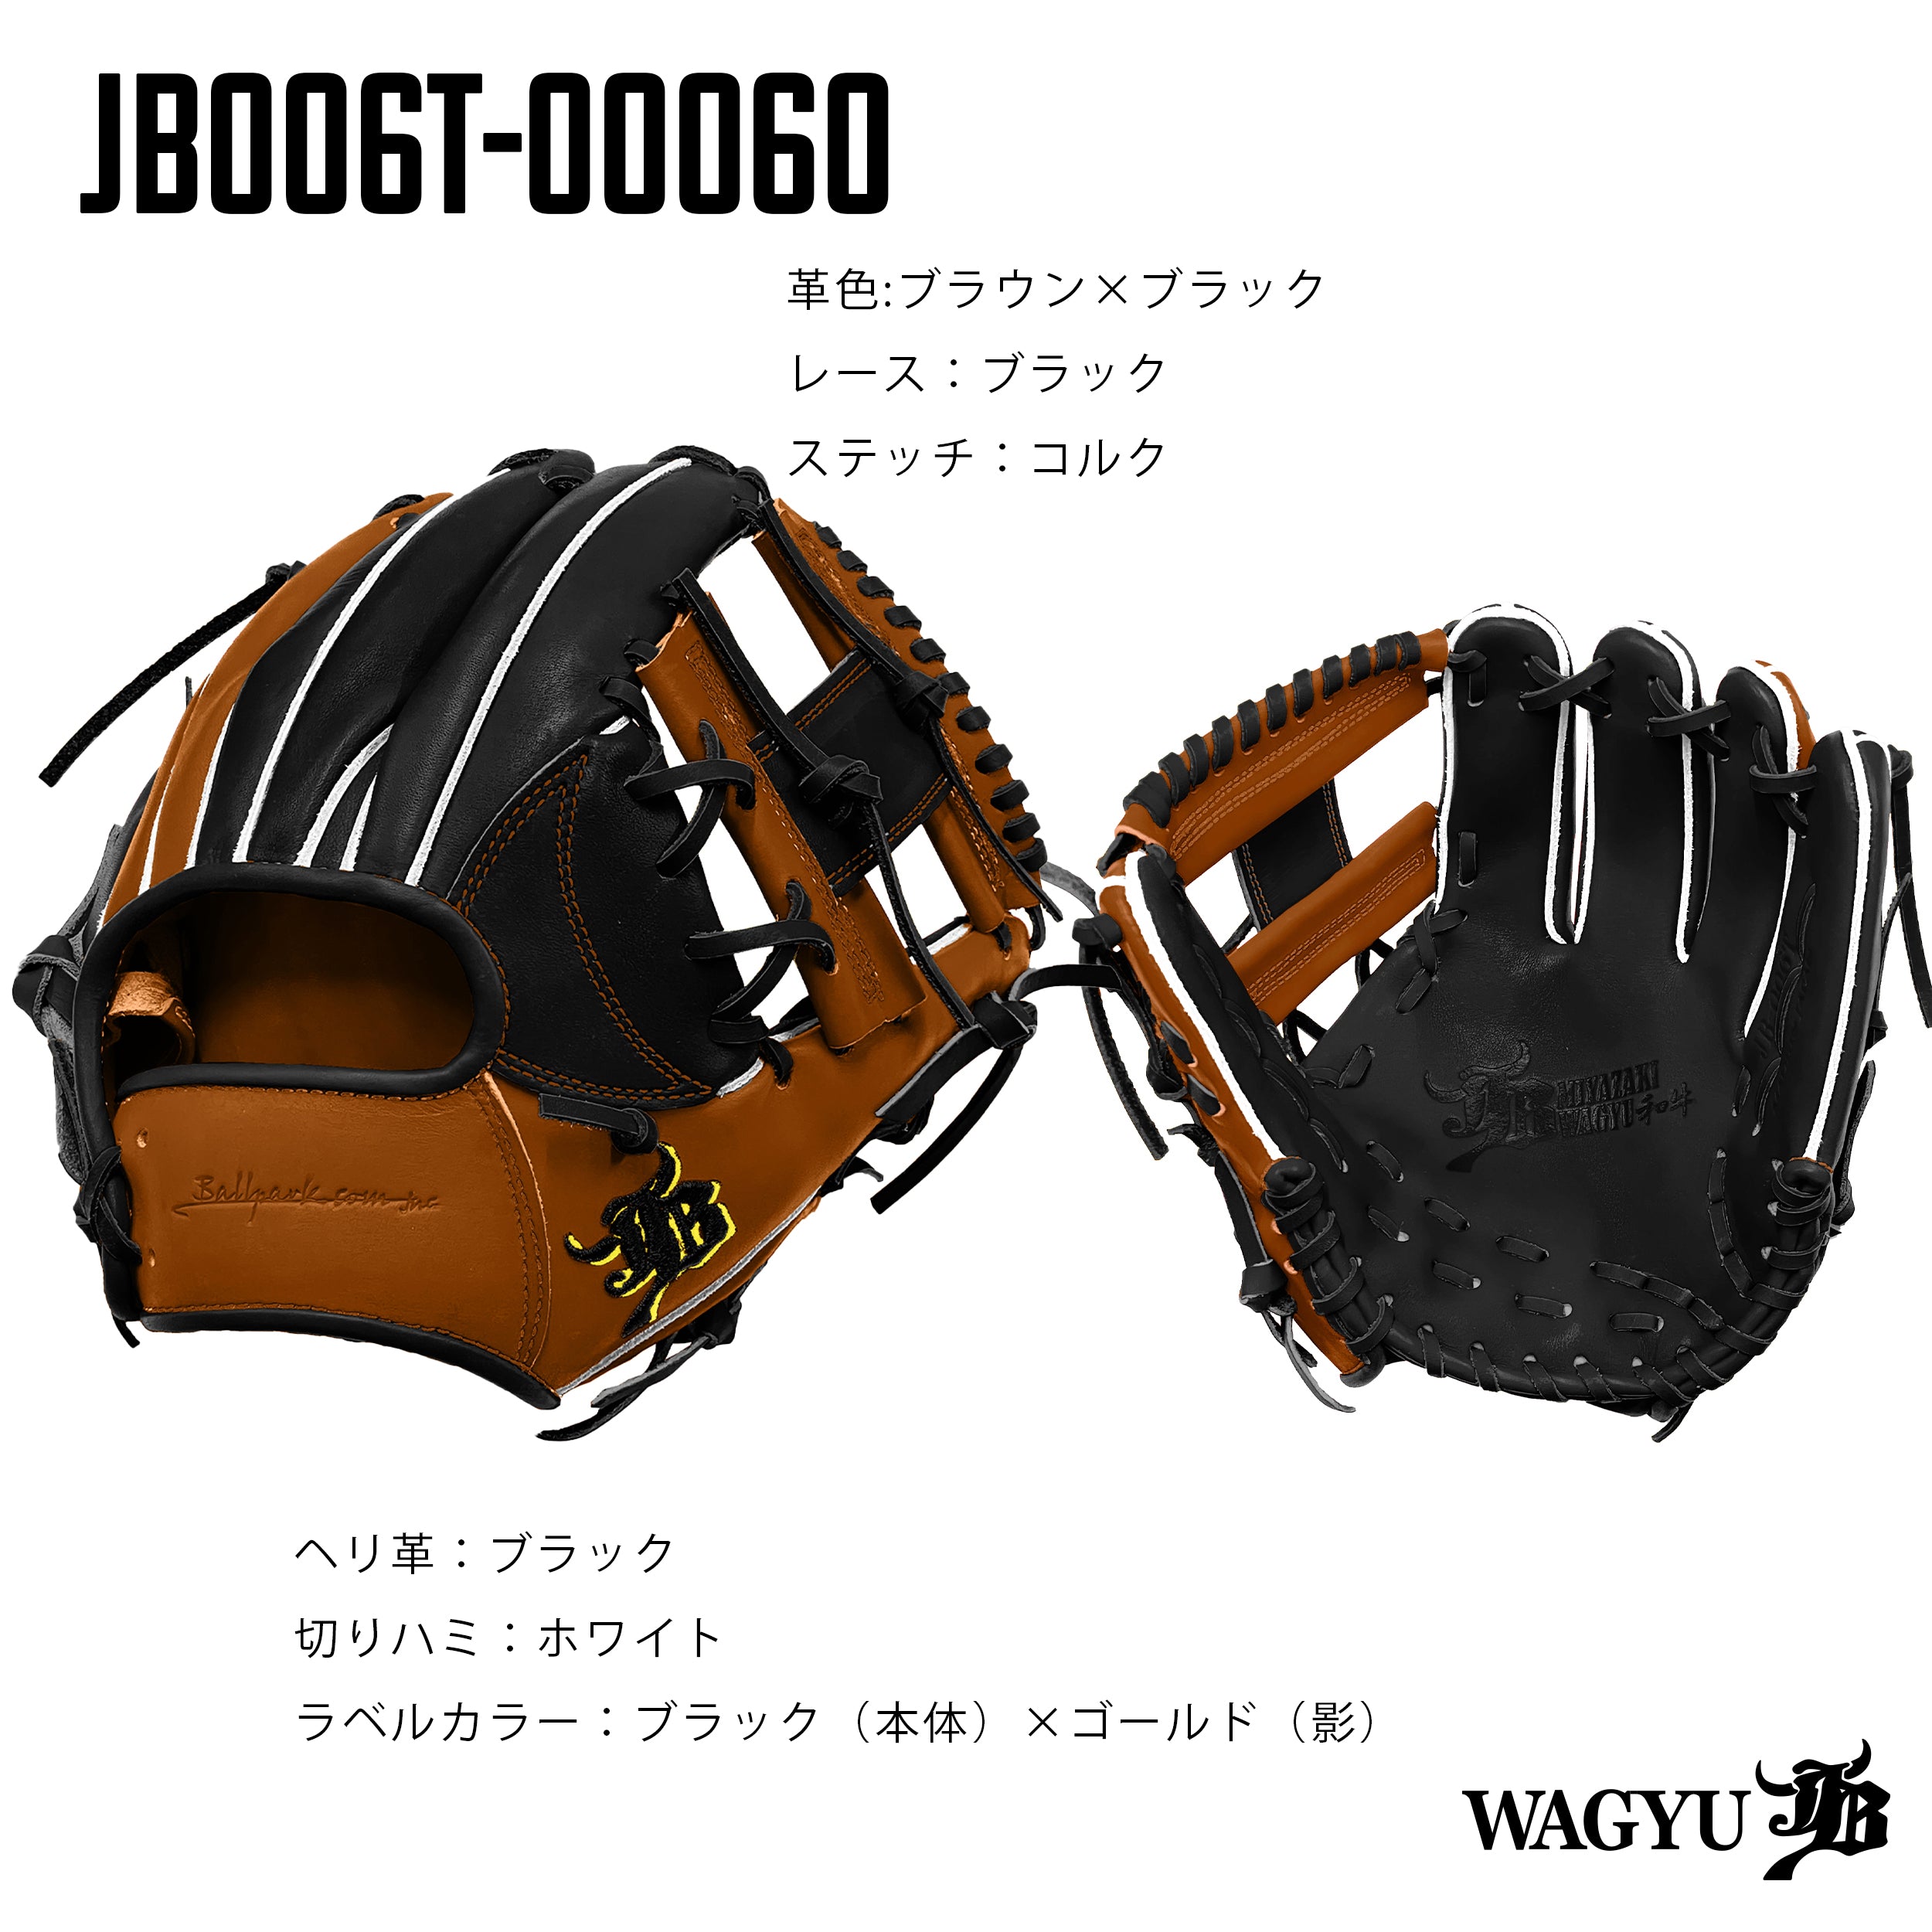 WAGYU JBパターンオーダーグラブ/006Tモデル – ボールパーク 